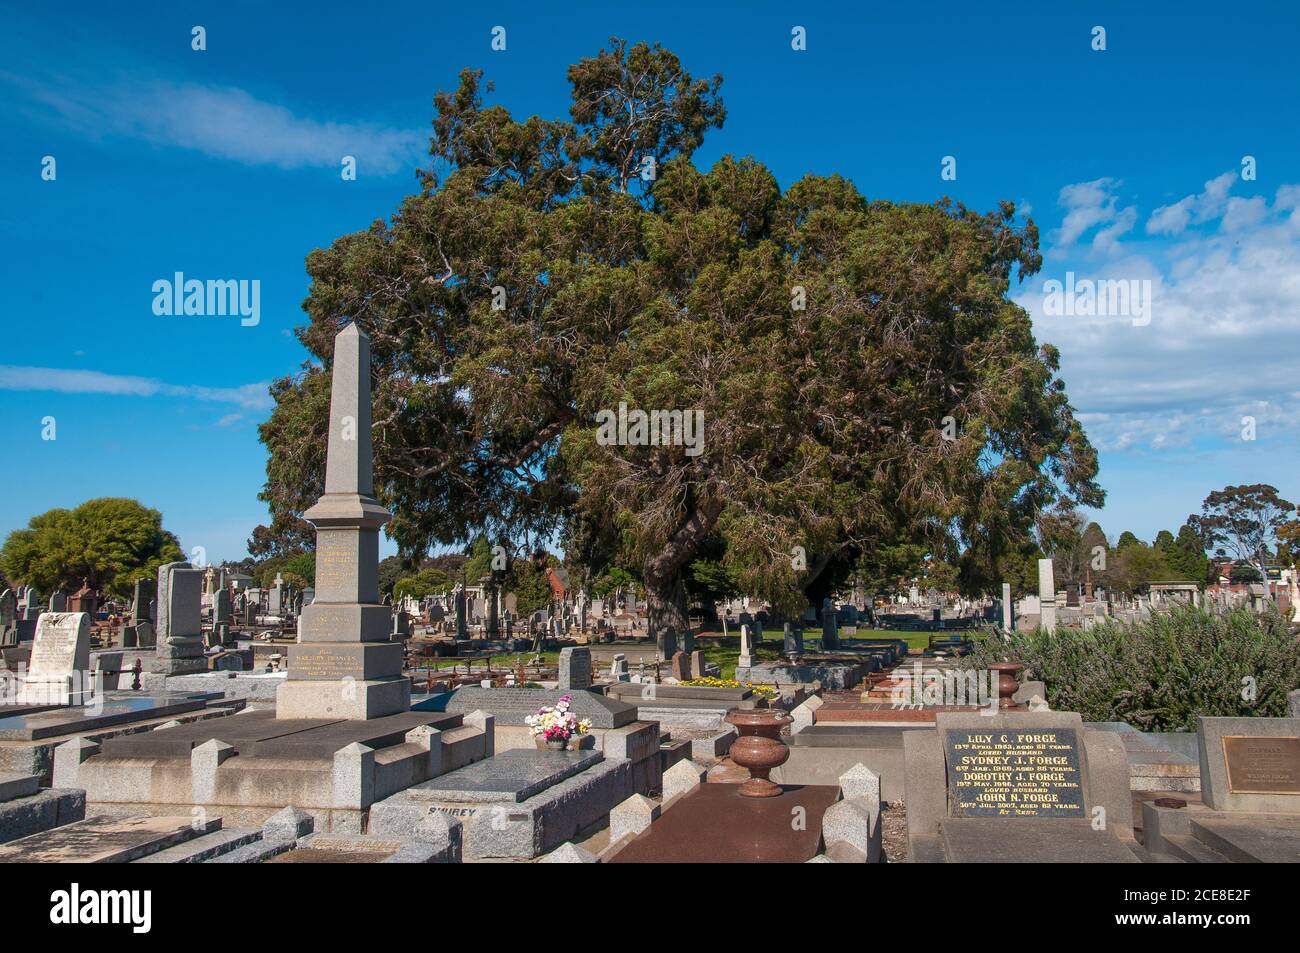 Fondato nel 1854, il cimitero generale di Brighton, in stile giardino, a Caulfield South è uno dei cimiteri più antichi e significativi di Melbourne Foto Stock